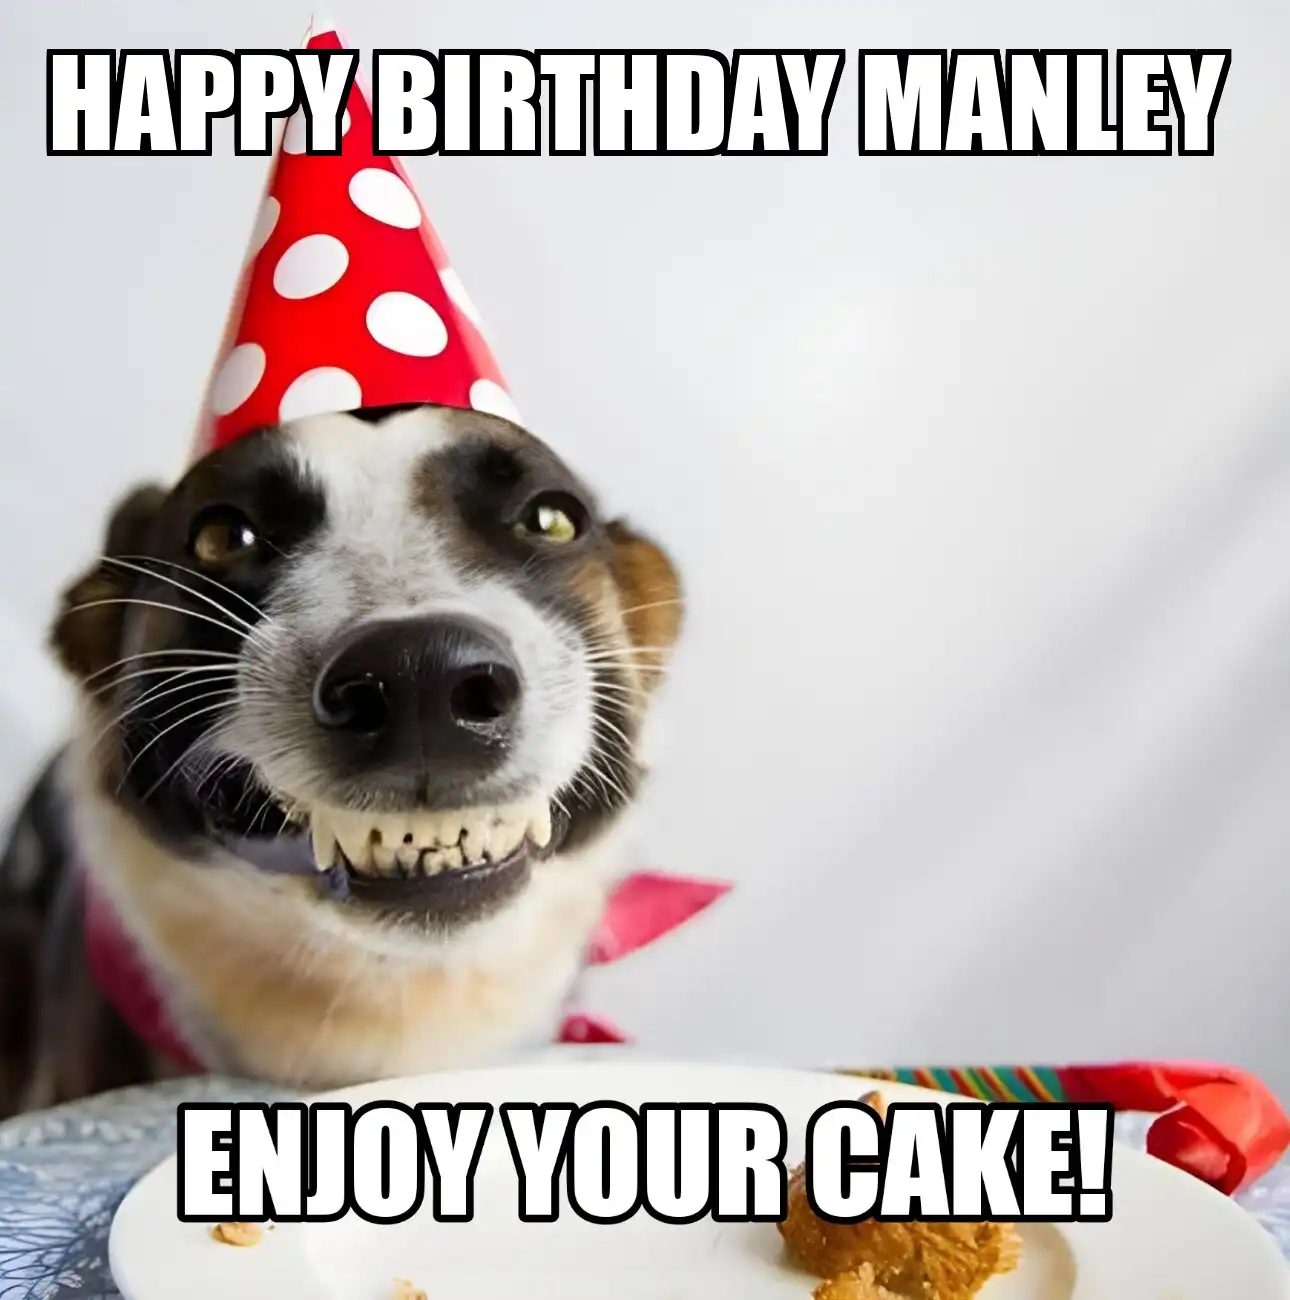 Happy Birthday Manley Enjoy Your Cake Dog Meme